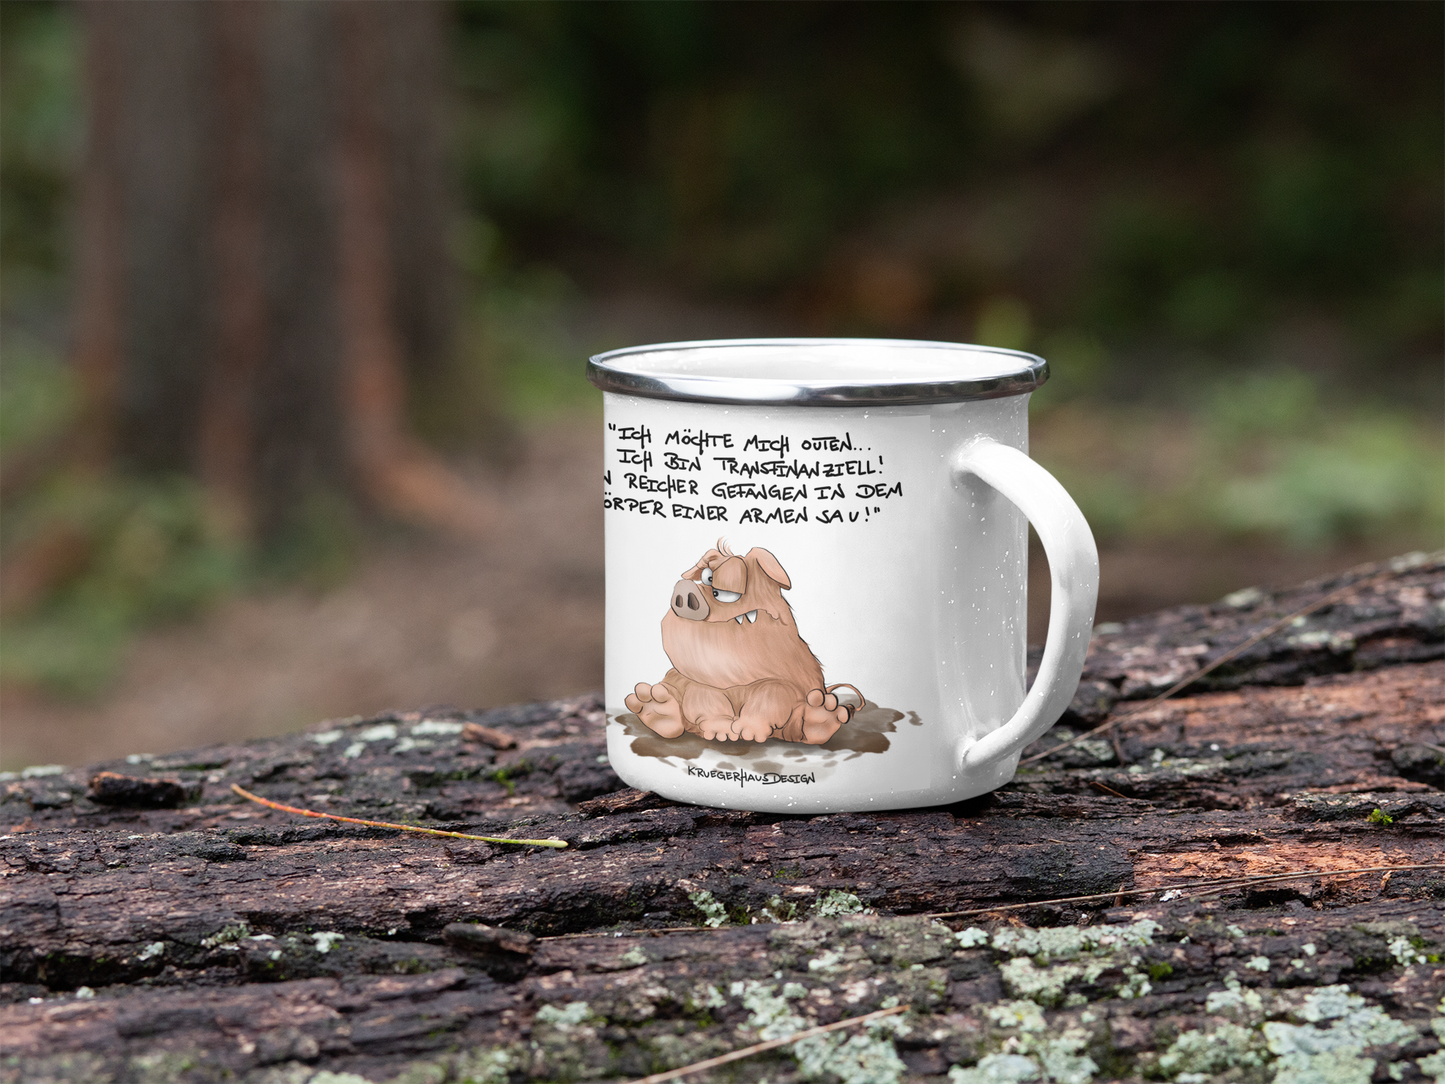 Outdoor Emaille Tasse, Kaffeetasse von Kruegerhausdesign mit Monster und Spruch "Ich möchte mich ourten..."